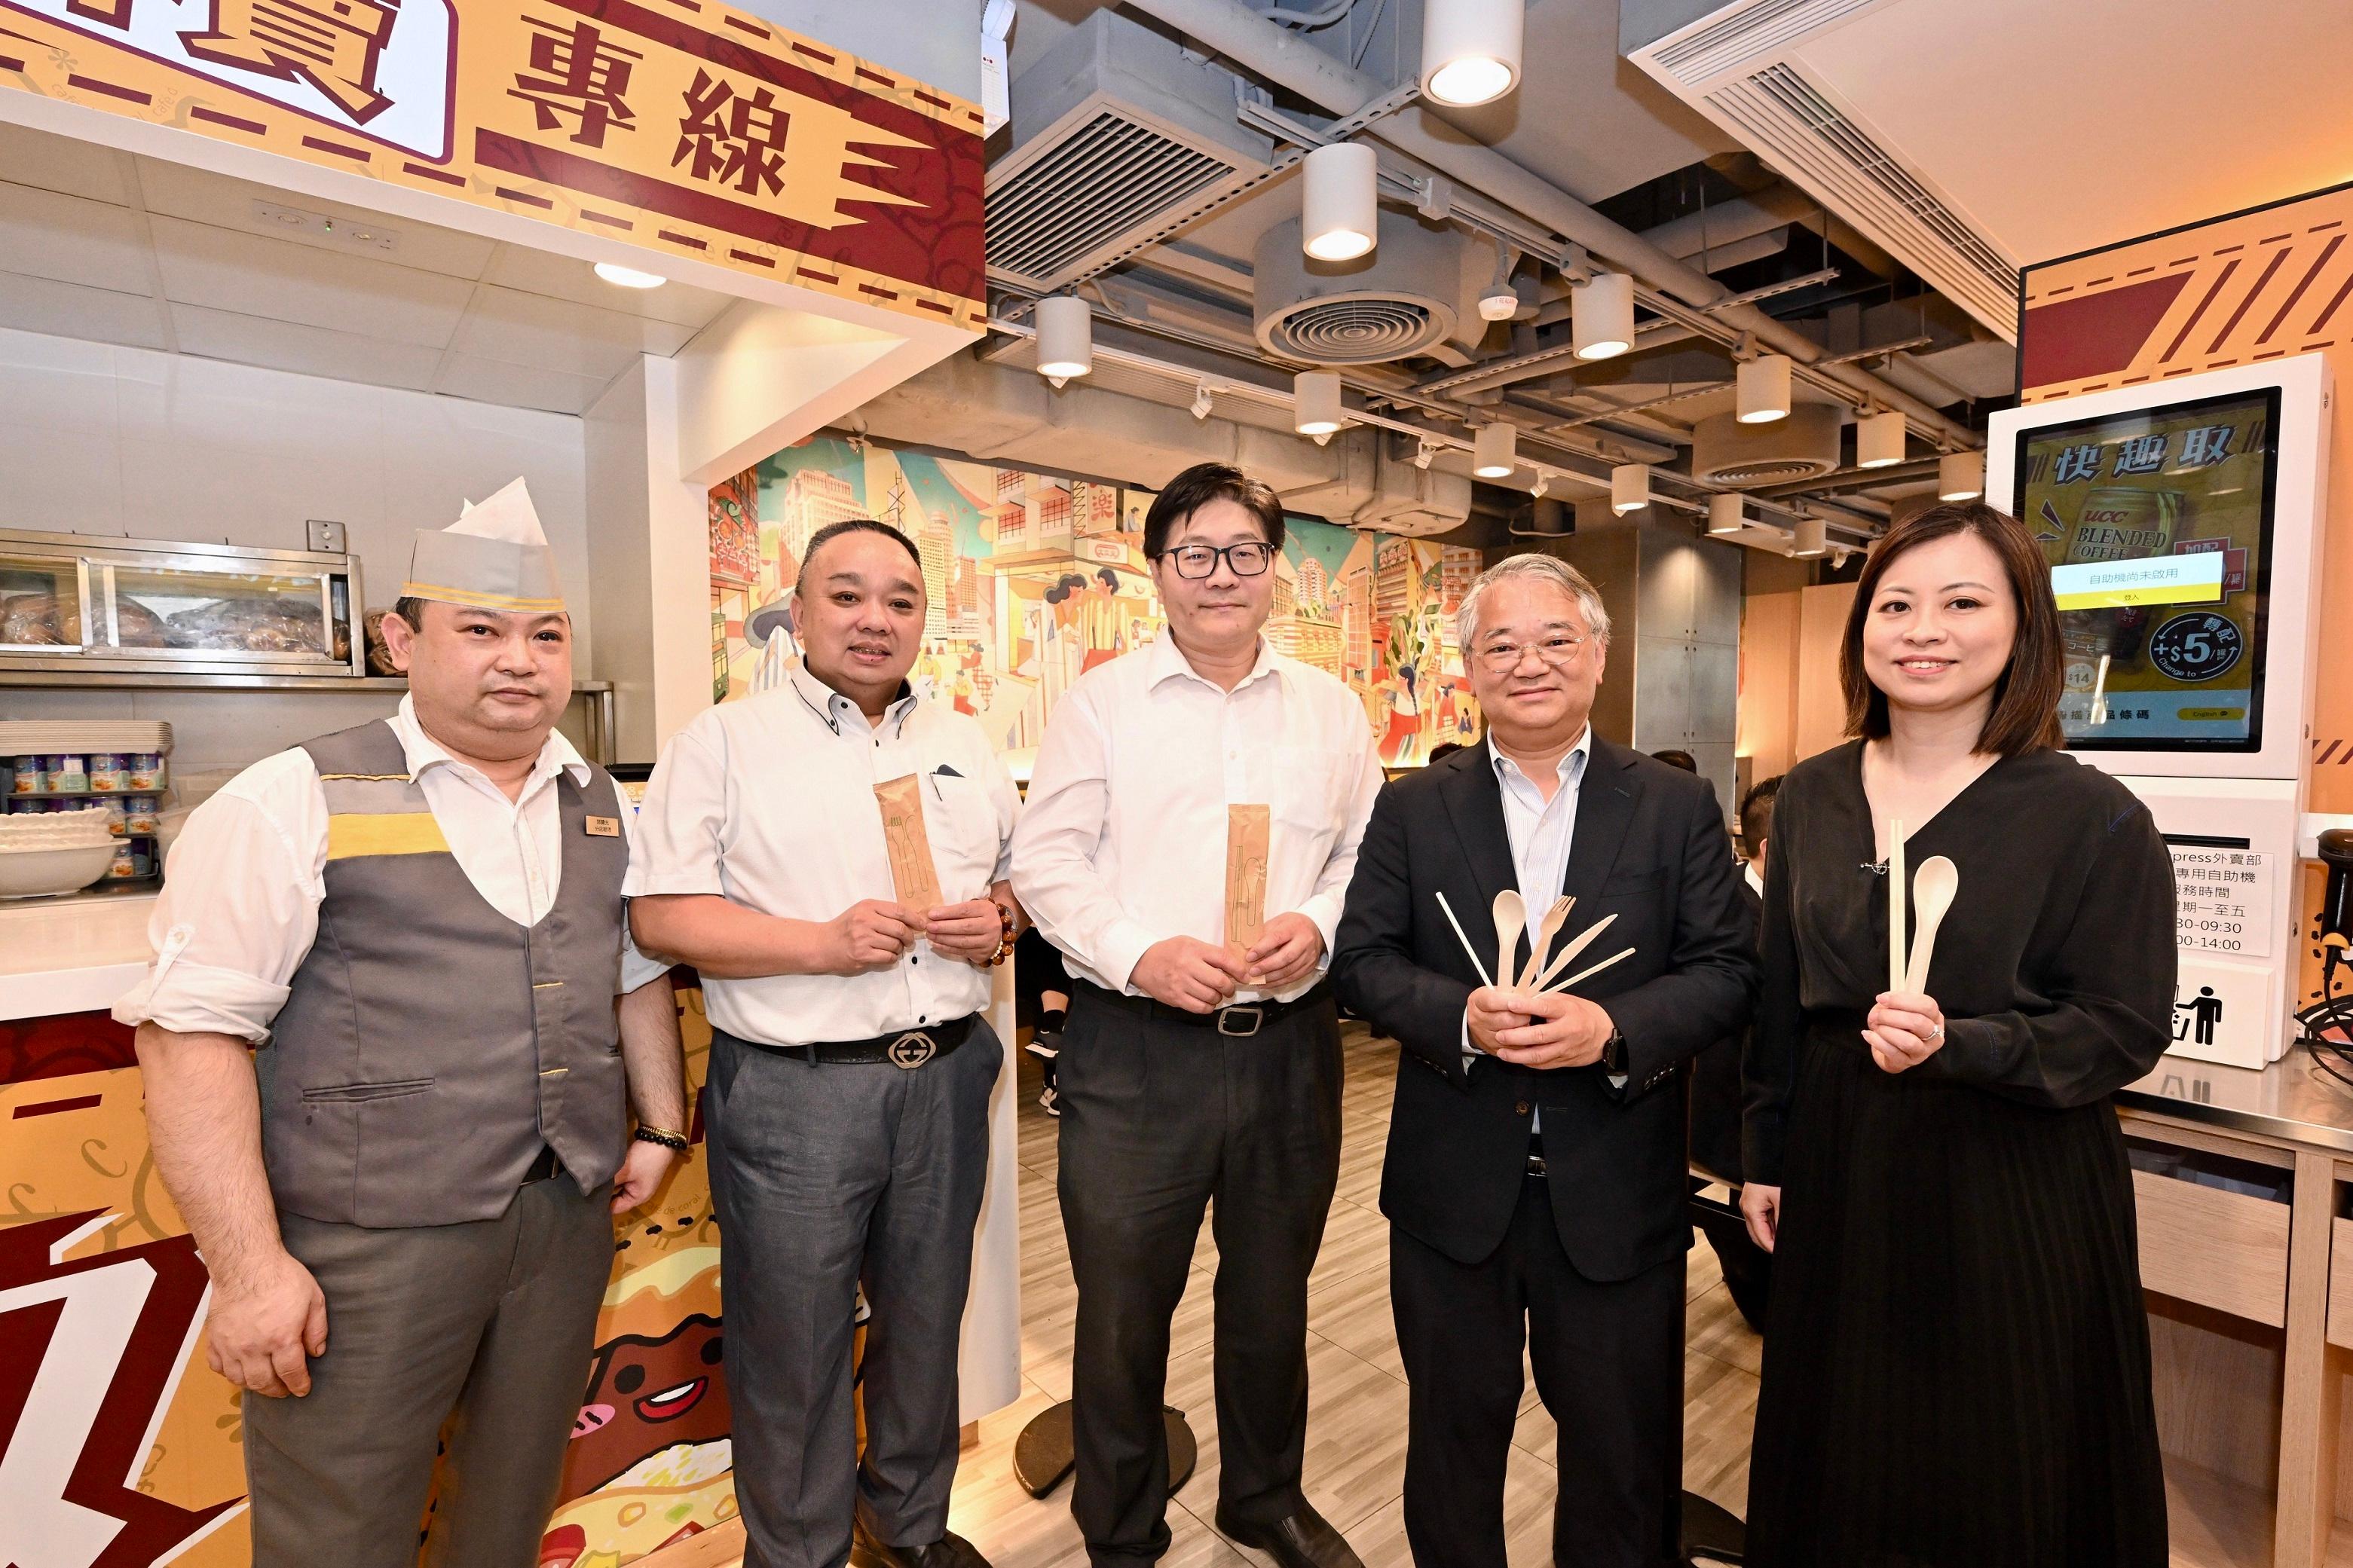 徐浩光博士（右二）及餐廳負責人和前線員工的合照。